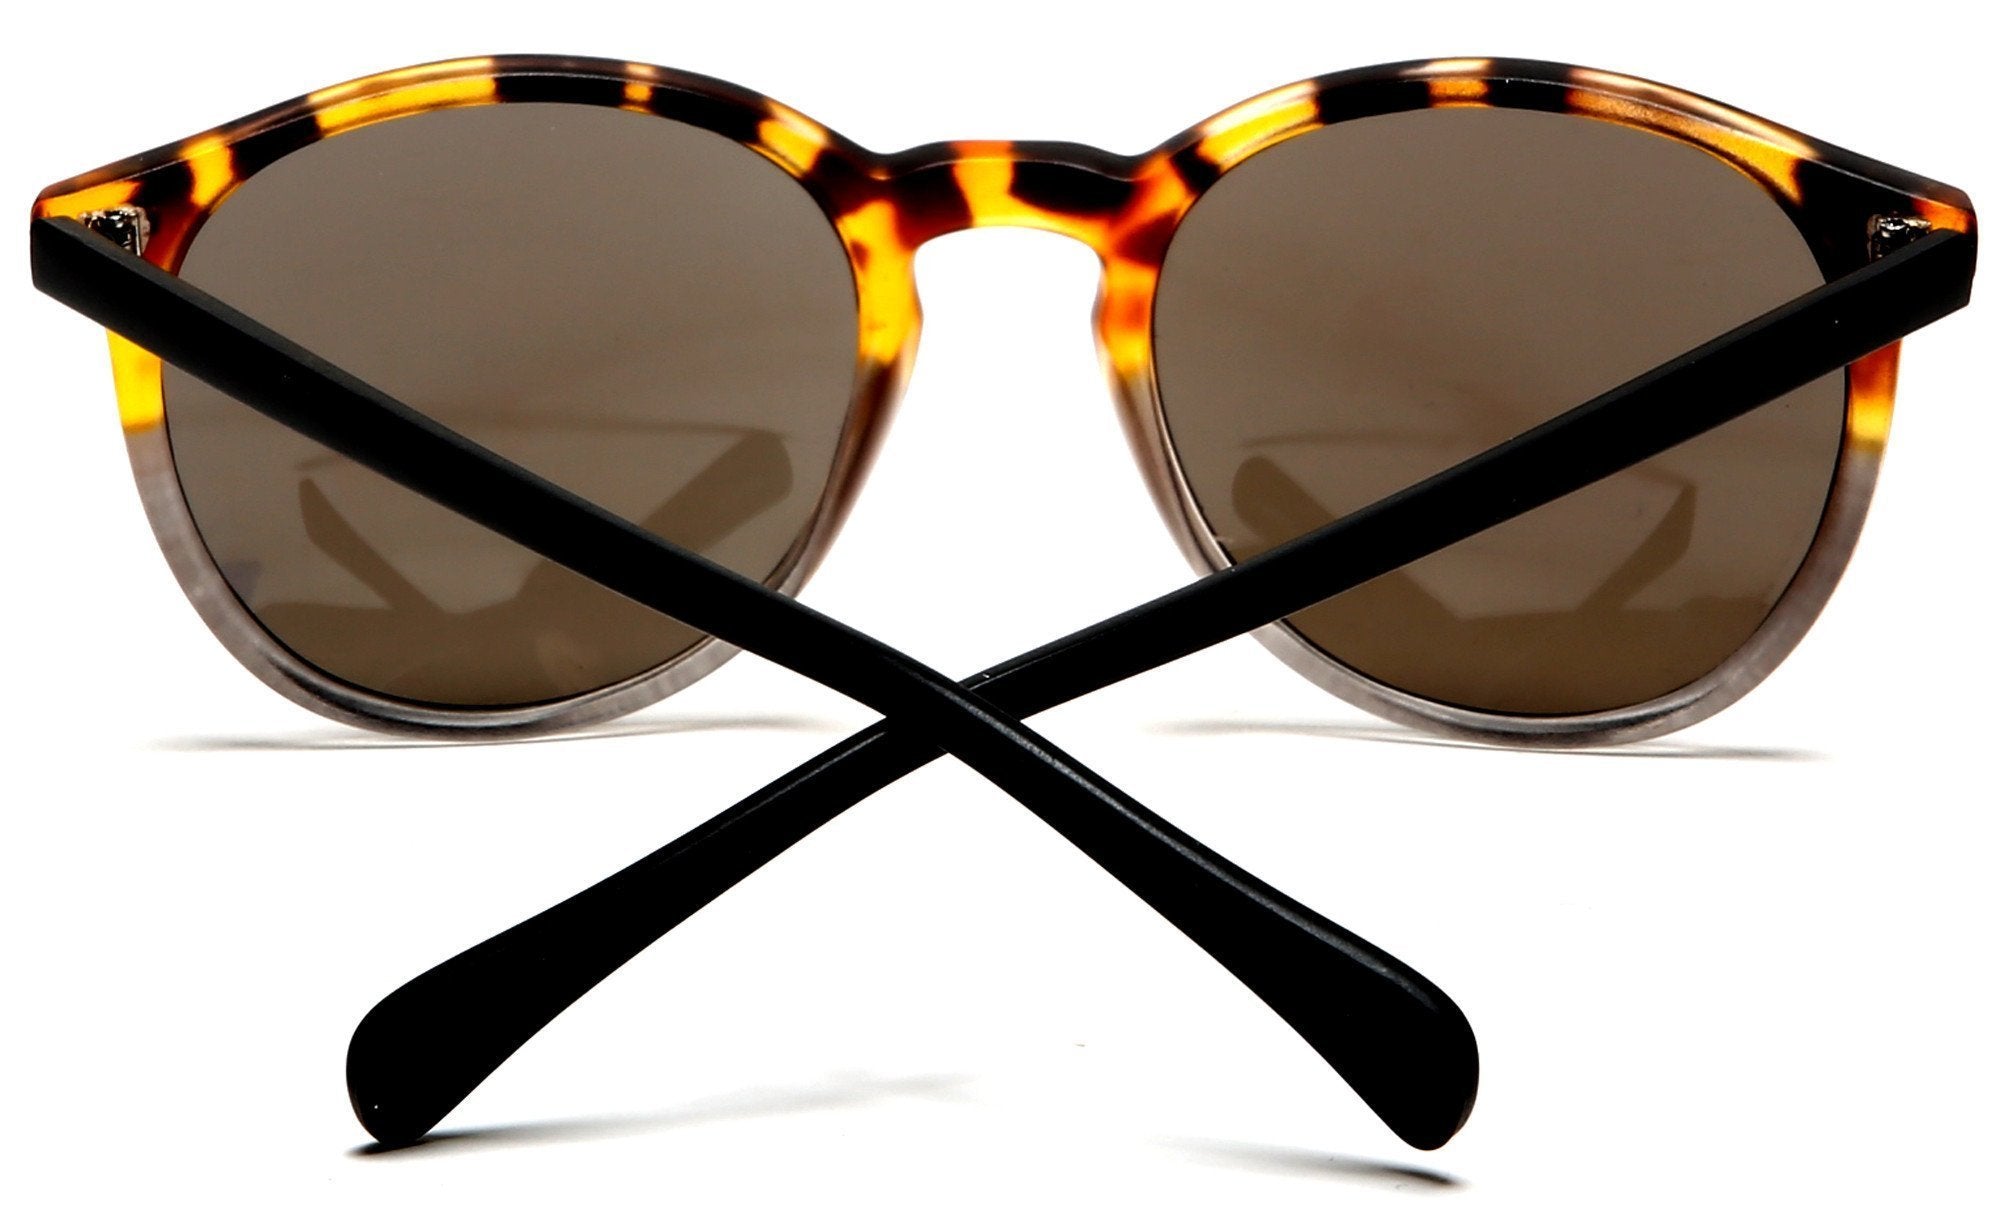 Florence Round Horn Rimmed Sunglasses Orange Black-Samba Shades